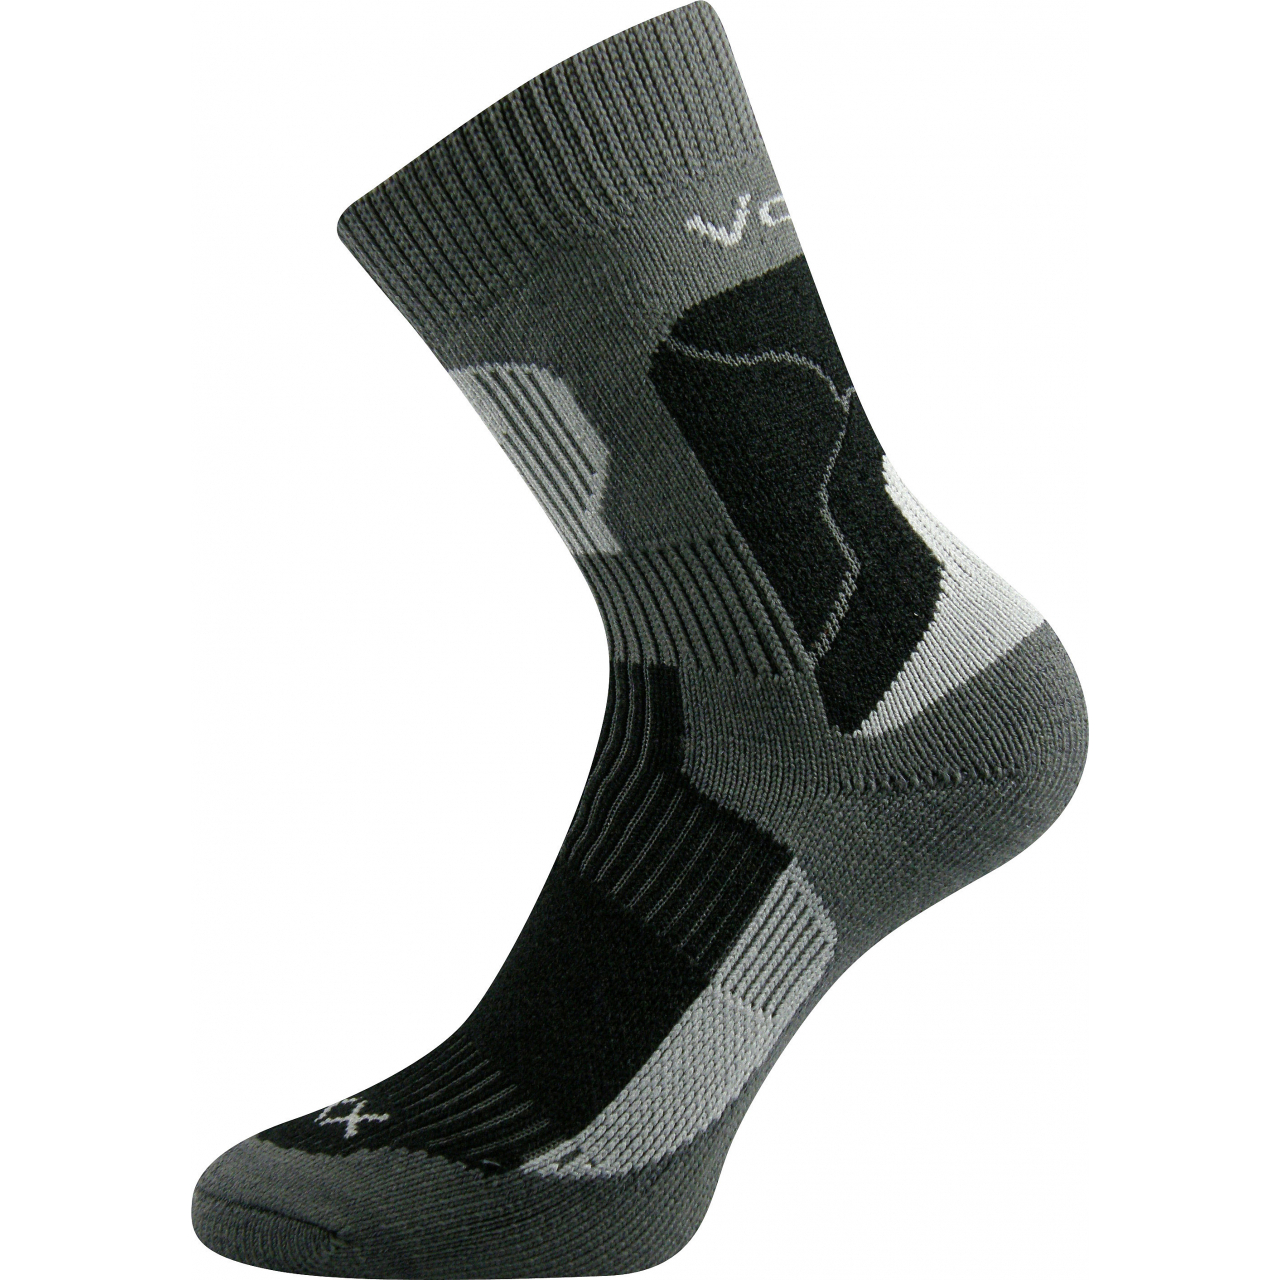 Ponožky unisex termo Voxx Treking - tmavě šedé-černé, 43-45